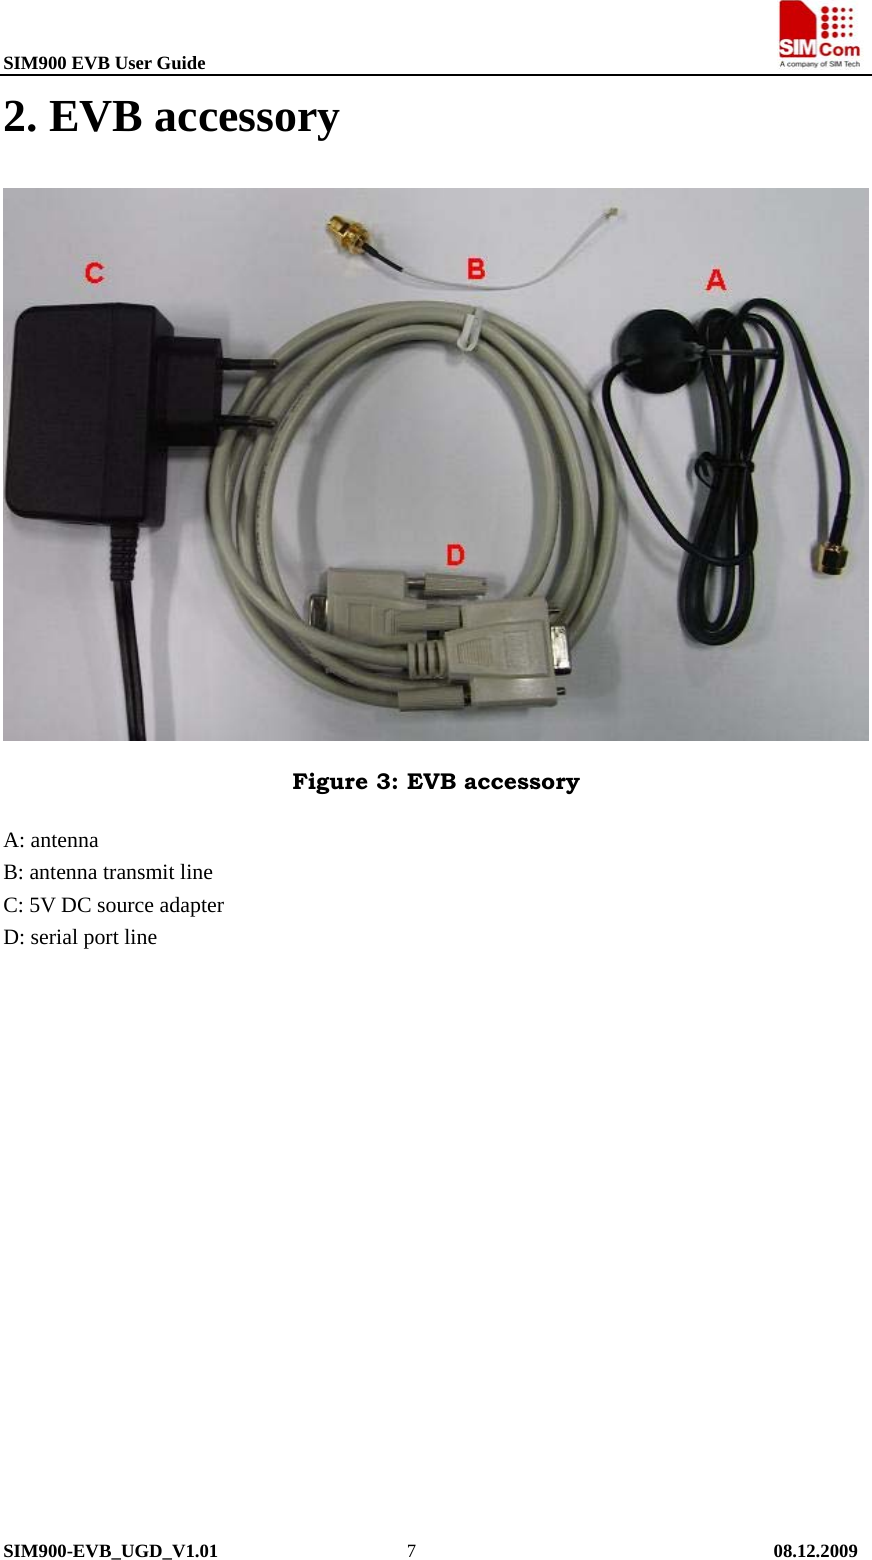 SIM900 EVB User Guide                                                                       SIM900-EVB_UGD_V1.01                    7                                      08.12.2009 2. EVB accessory  Figure 3: EVB accessory A: antenna B: antenna transmit line C: 5V DC source adapter D: serial port line   